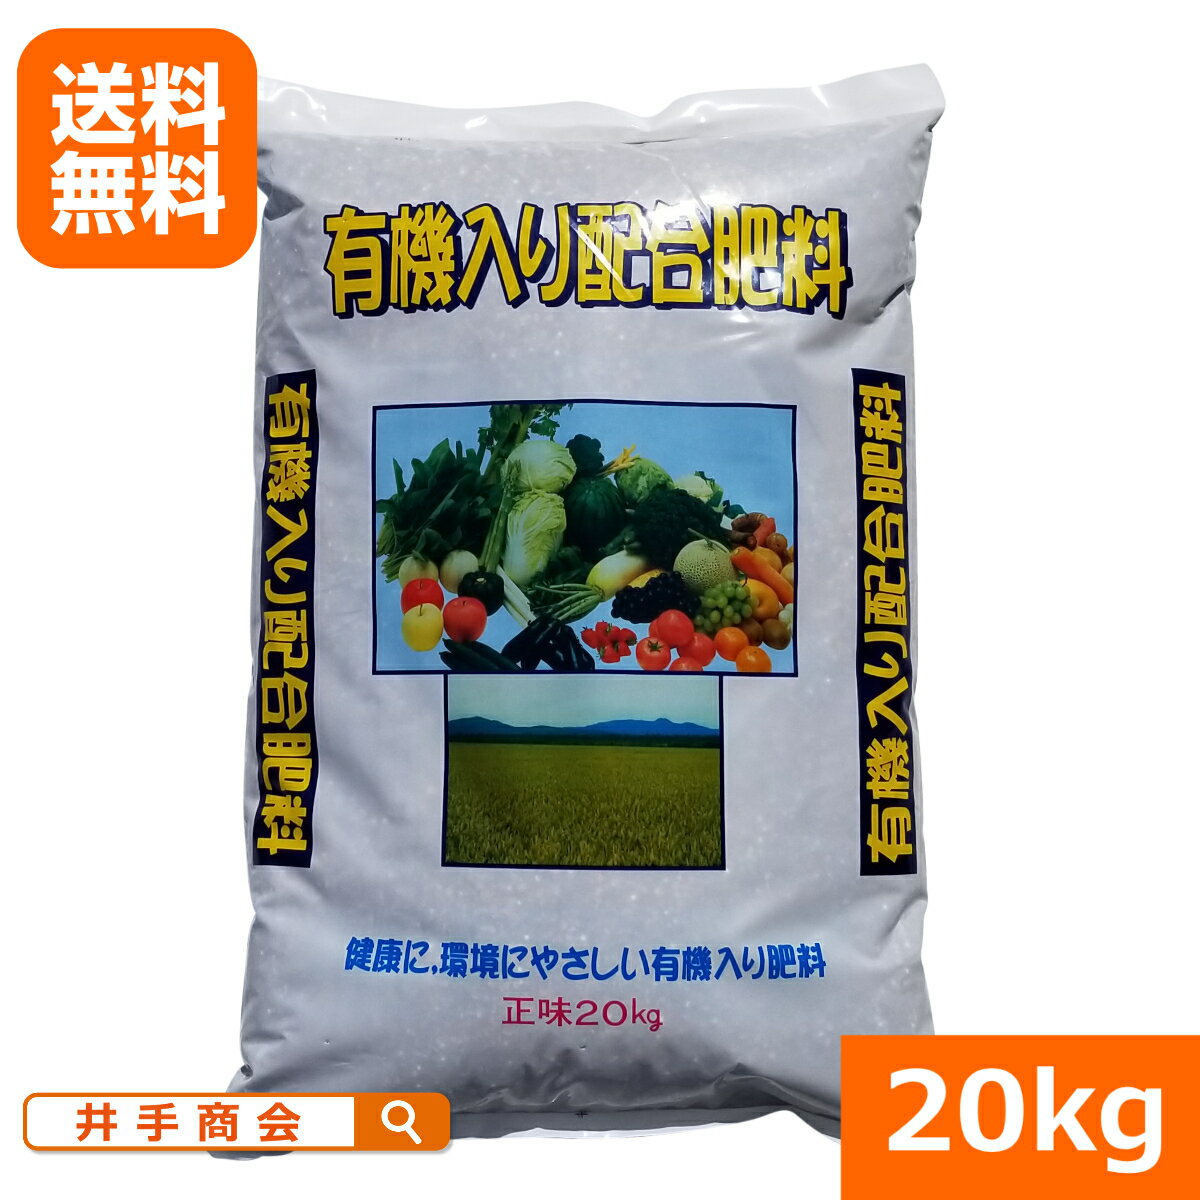 【送料無料】有機入り配合肥料(20kg)[肥料 家庭菜園 有機 農業 園芸]